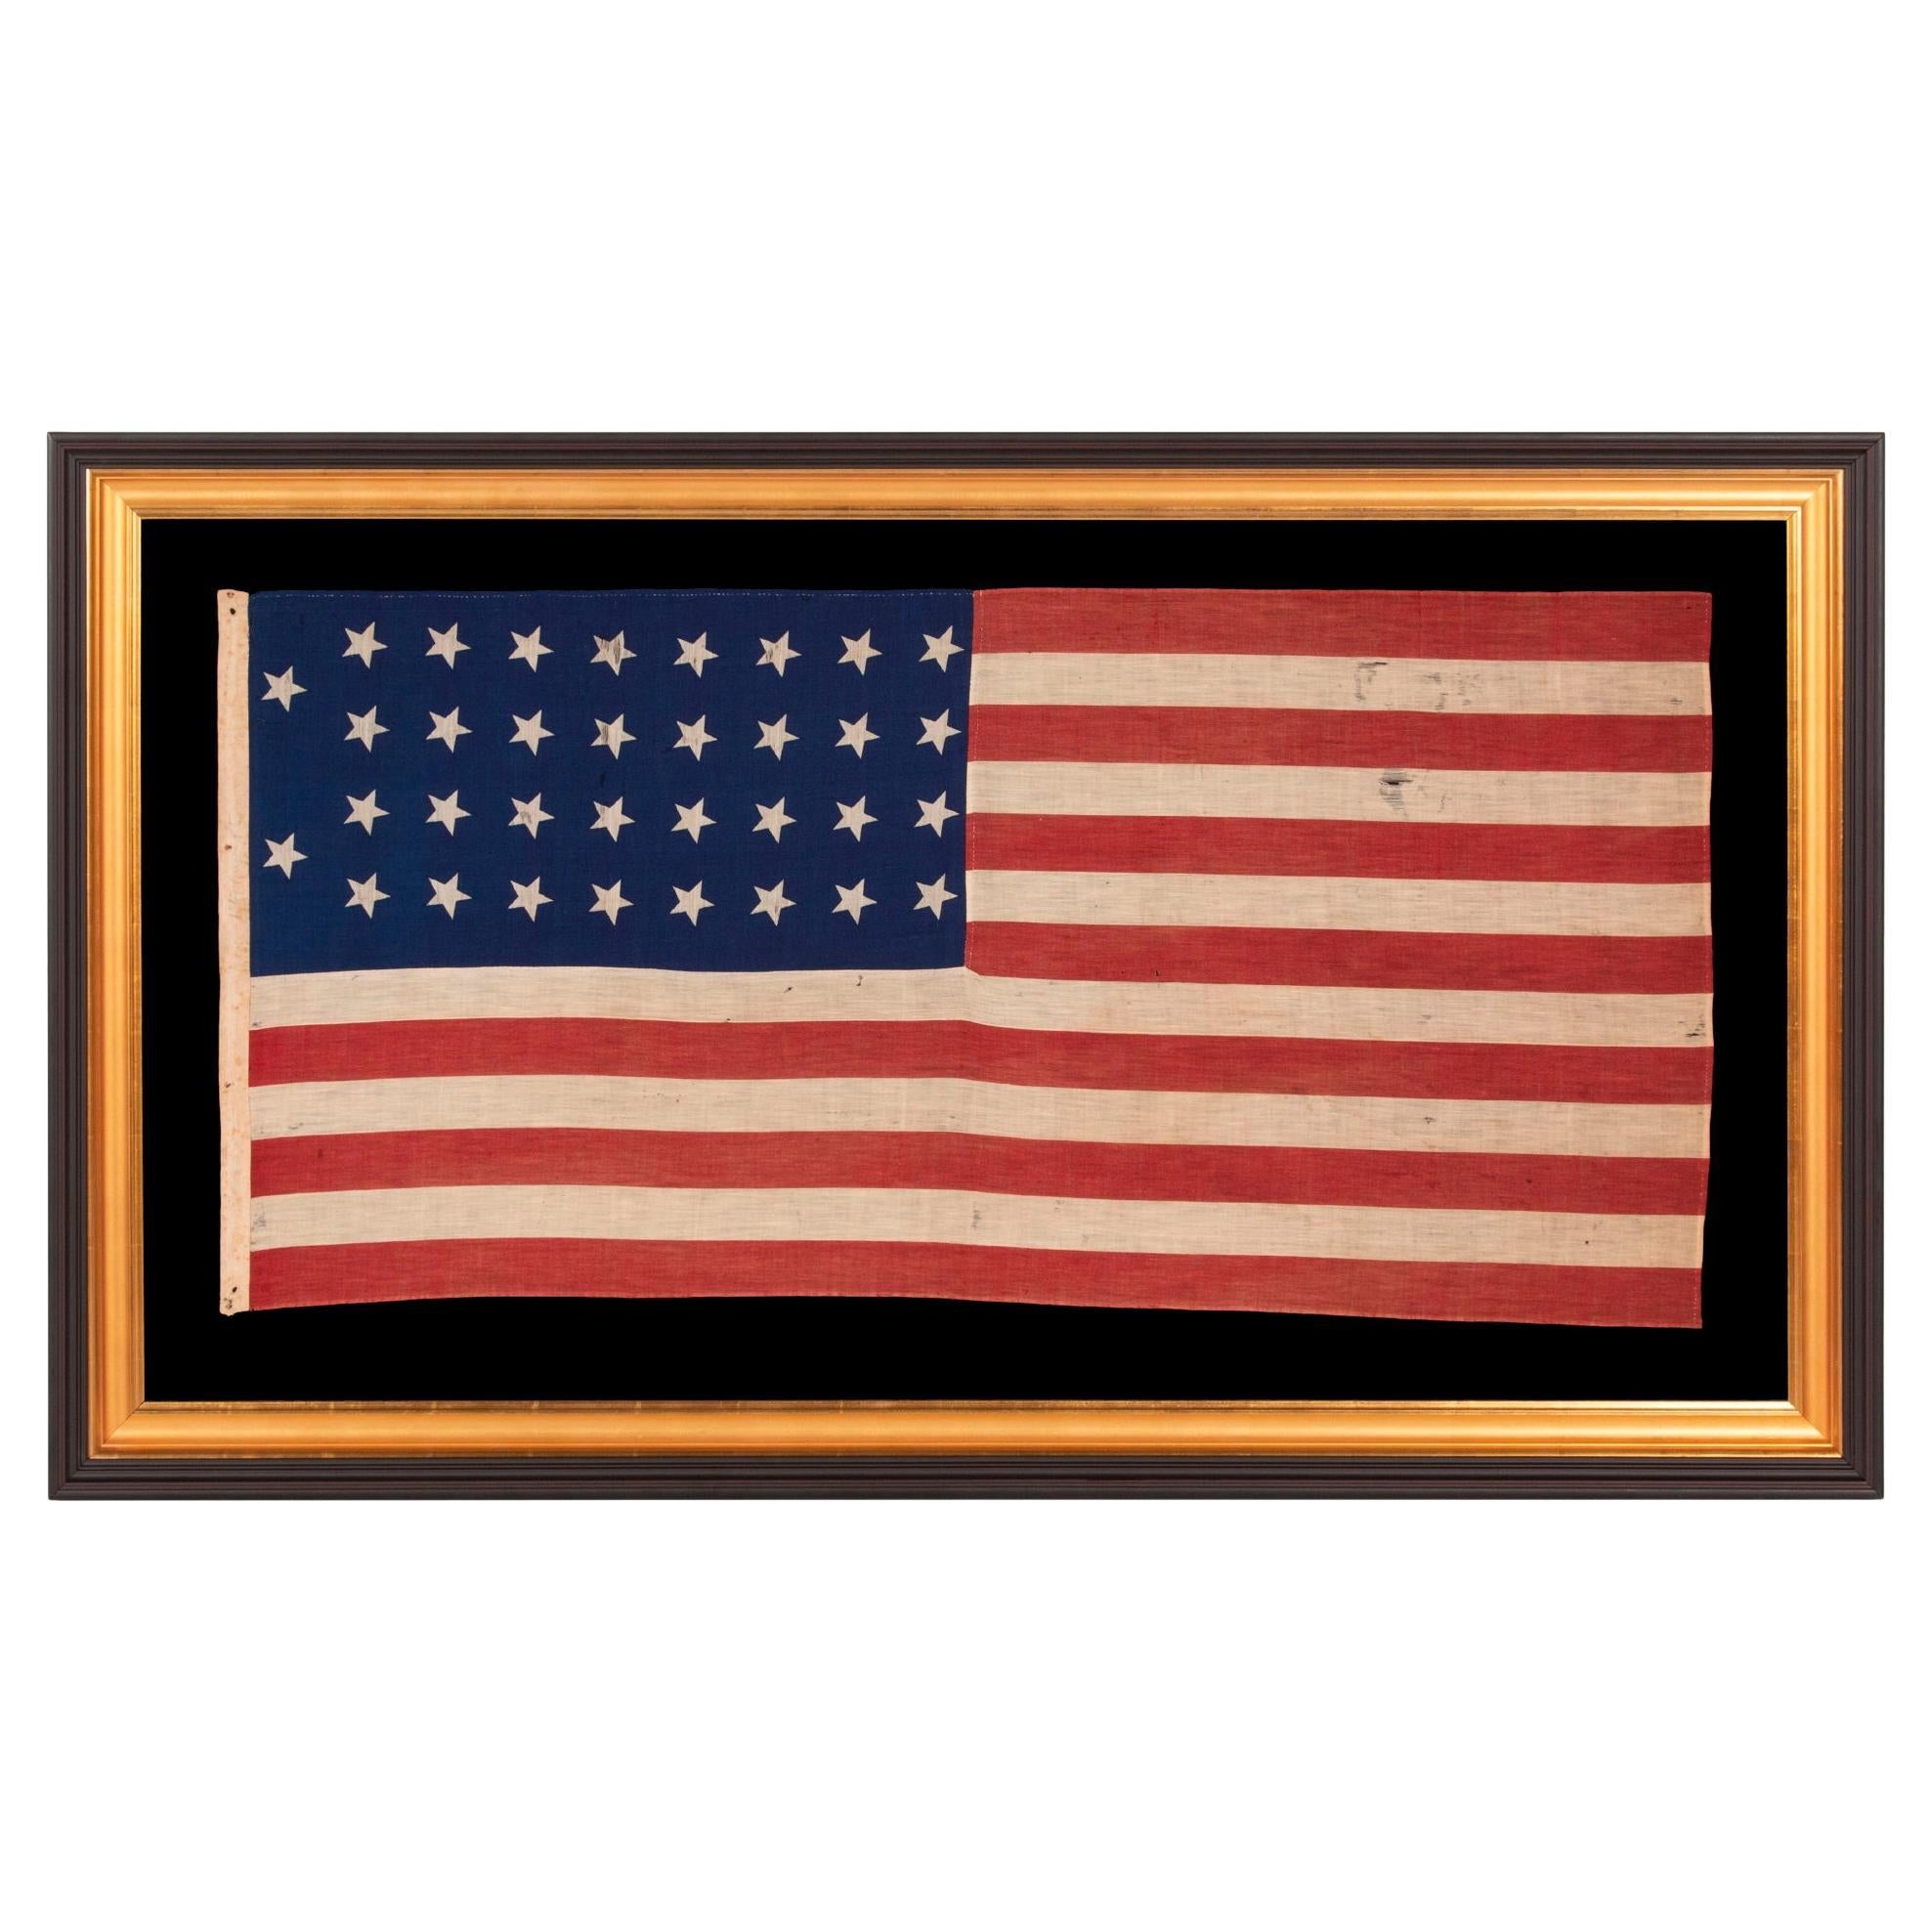 34 STAR AMERICAN FLAG, CIvil WAR PERIOD, 1861-63, eine SELTENE STYLE, KANSAS STATEHOOD